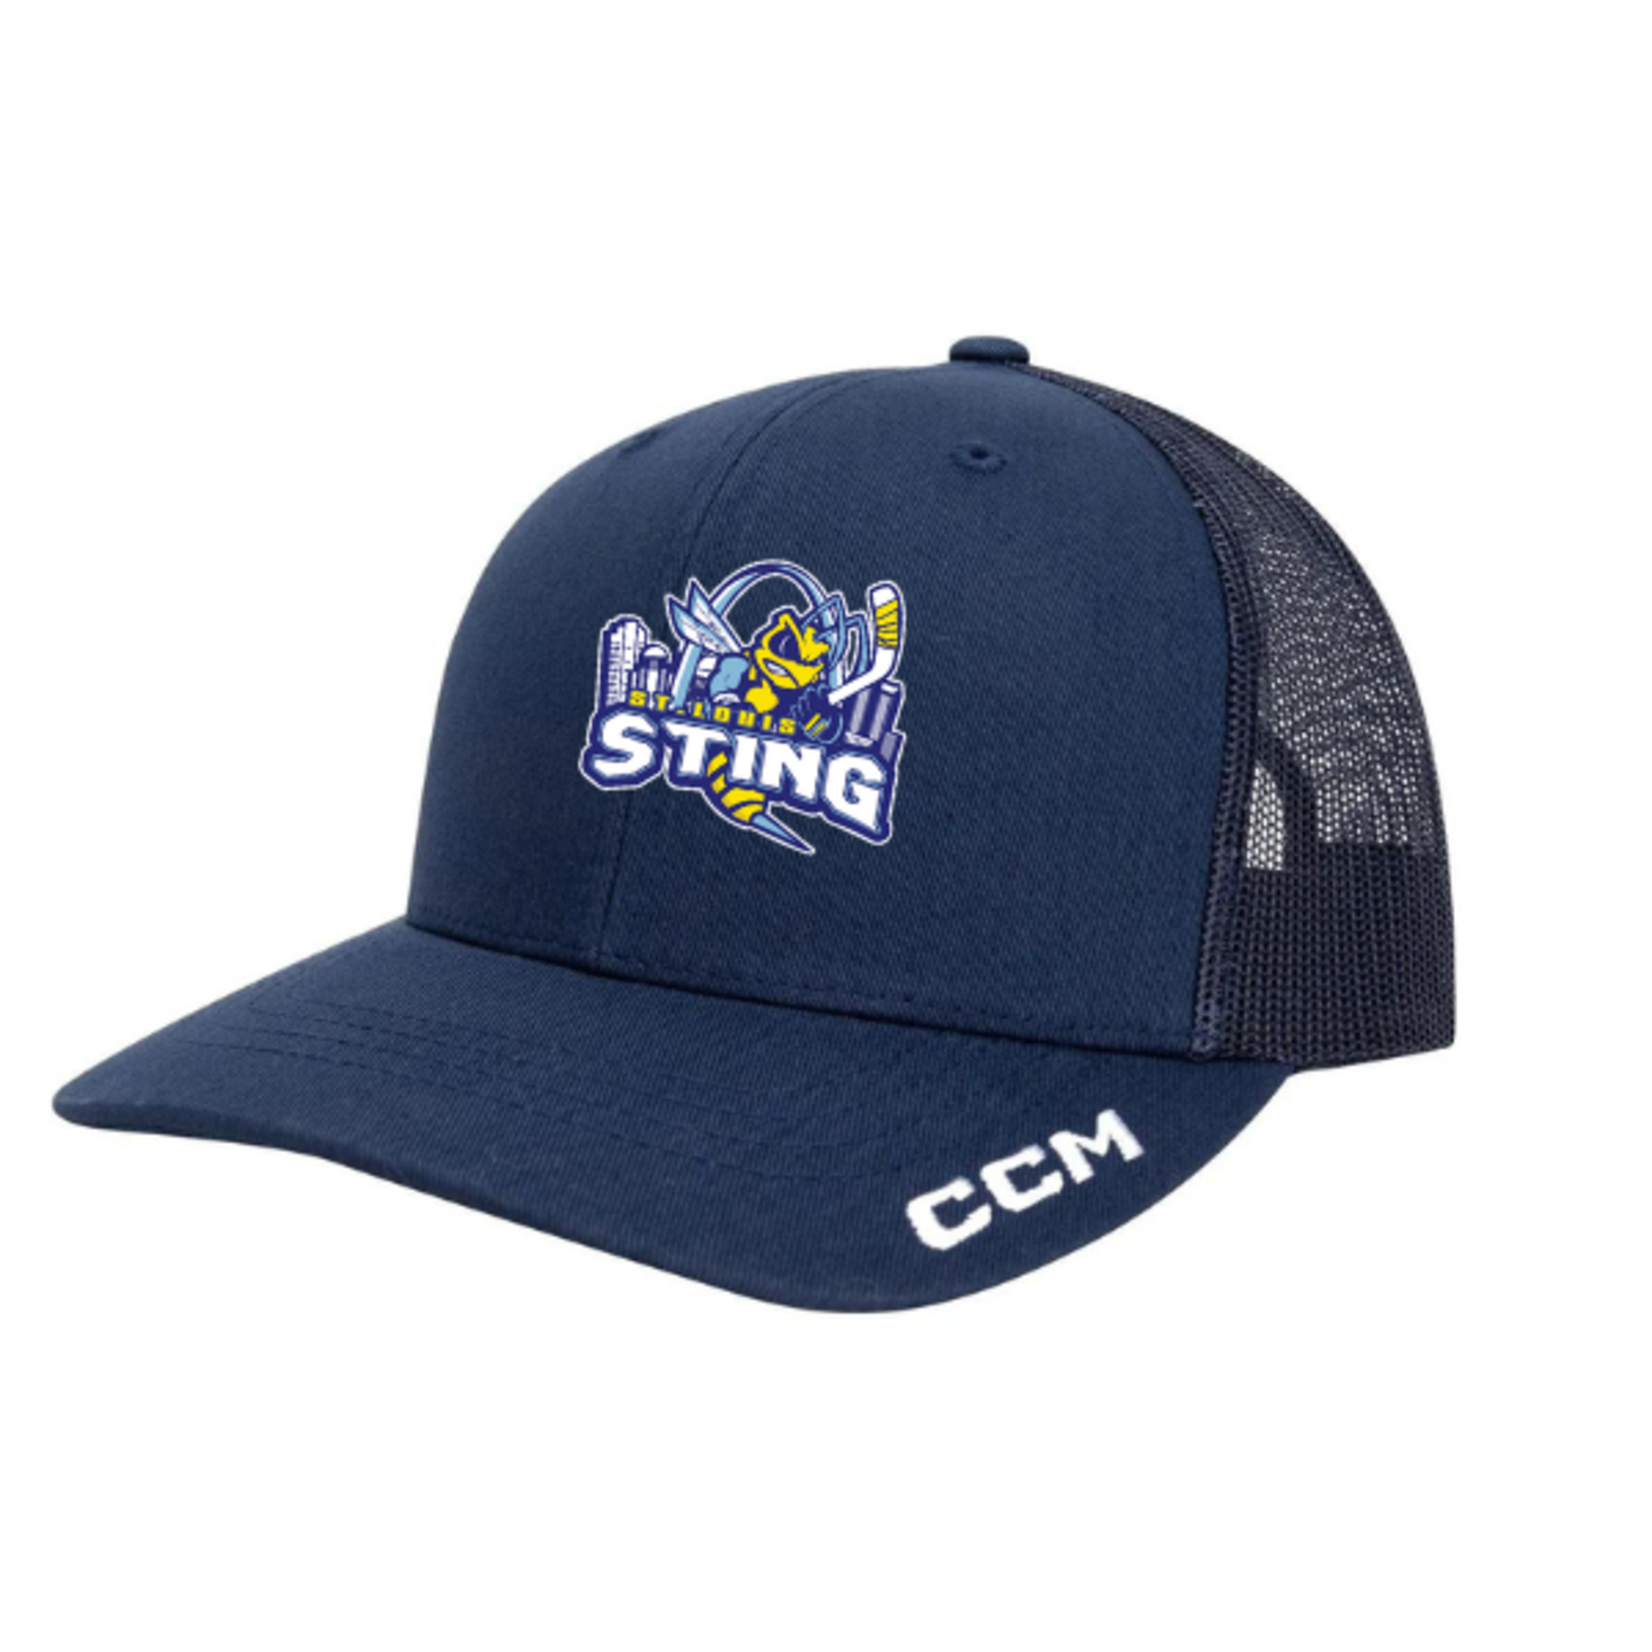 CCM STING CCM Trucker Hat (NAVY) YOUTH